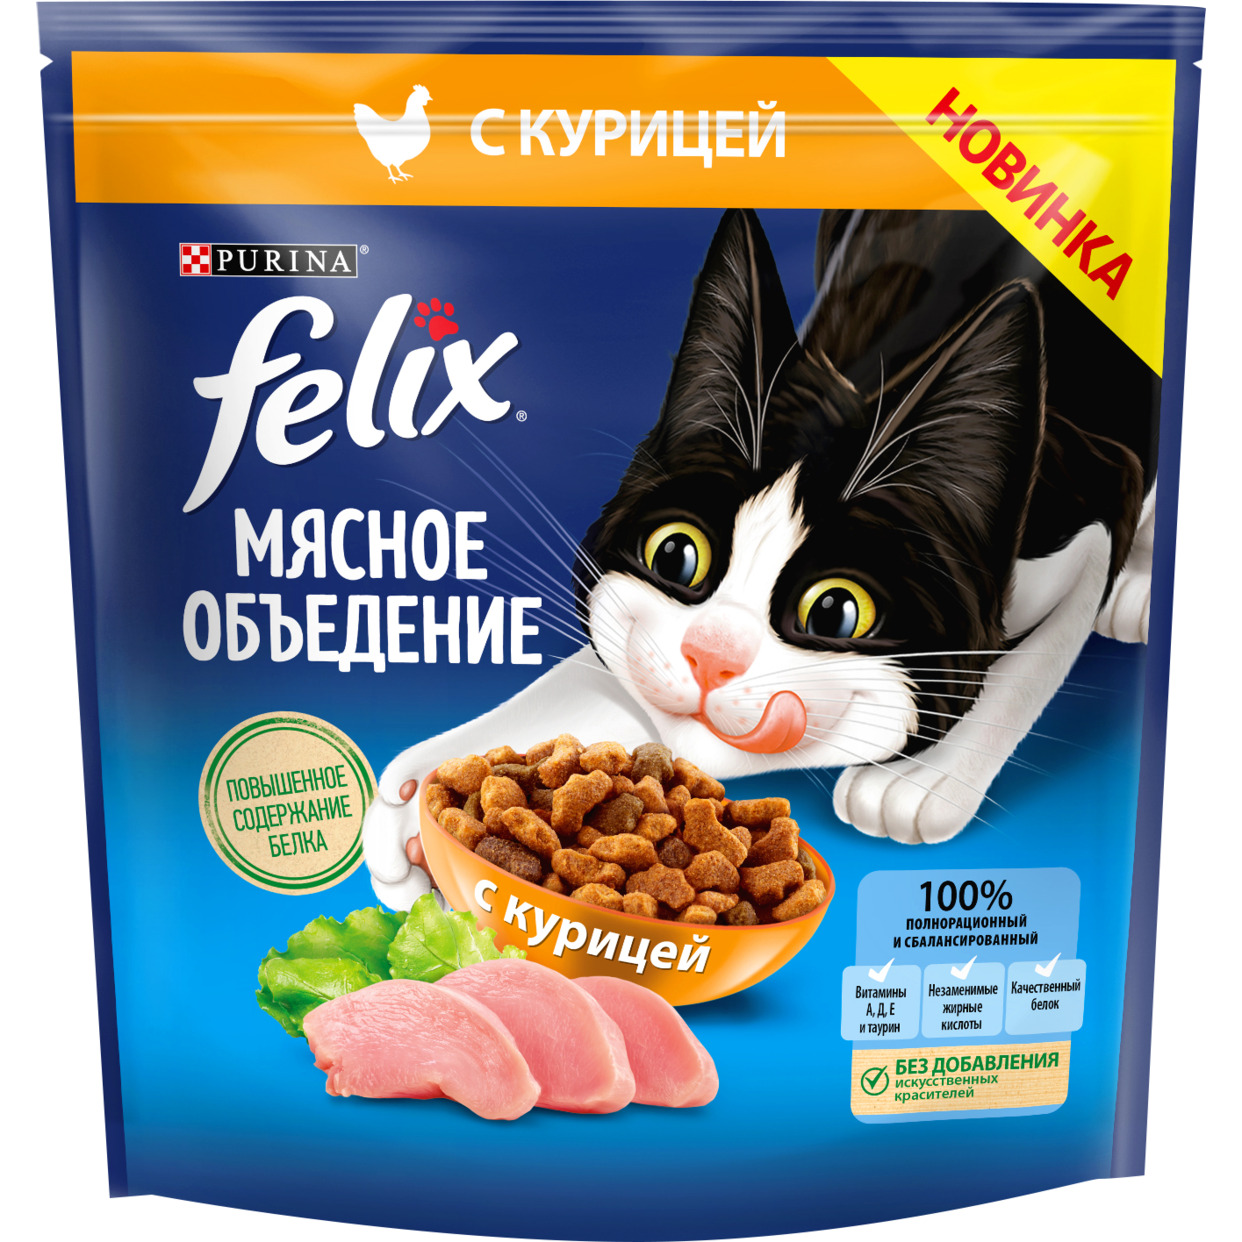 Сухой корм Felix Мясное объедение для взрослых кошек, с курицей 1,3кг по акции в Пятерочке